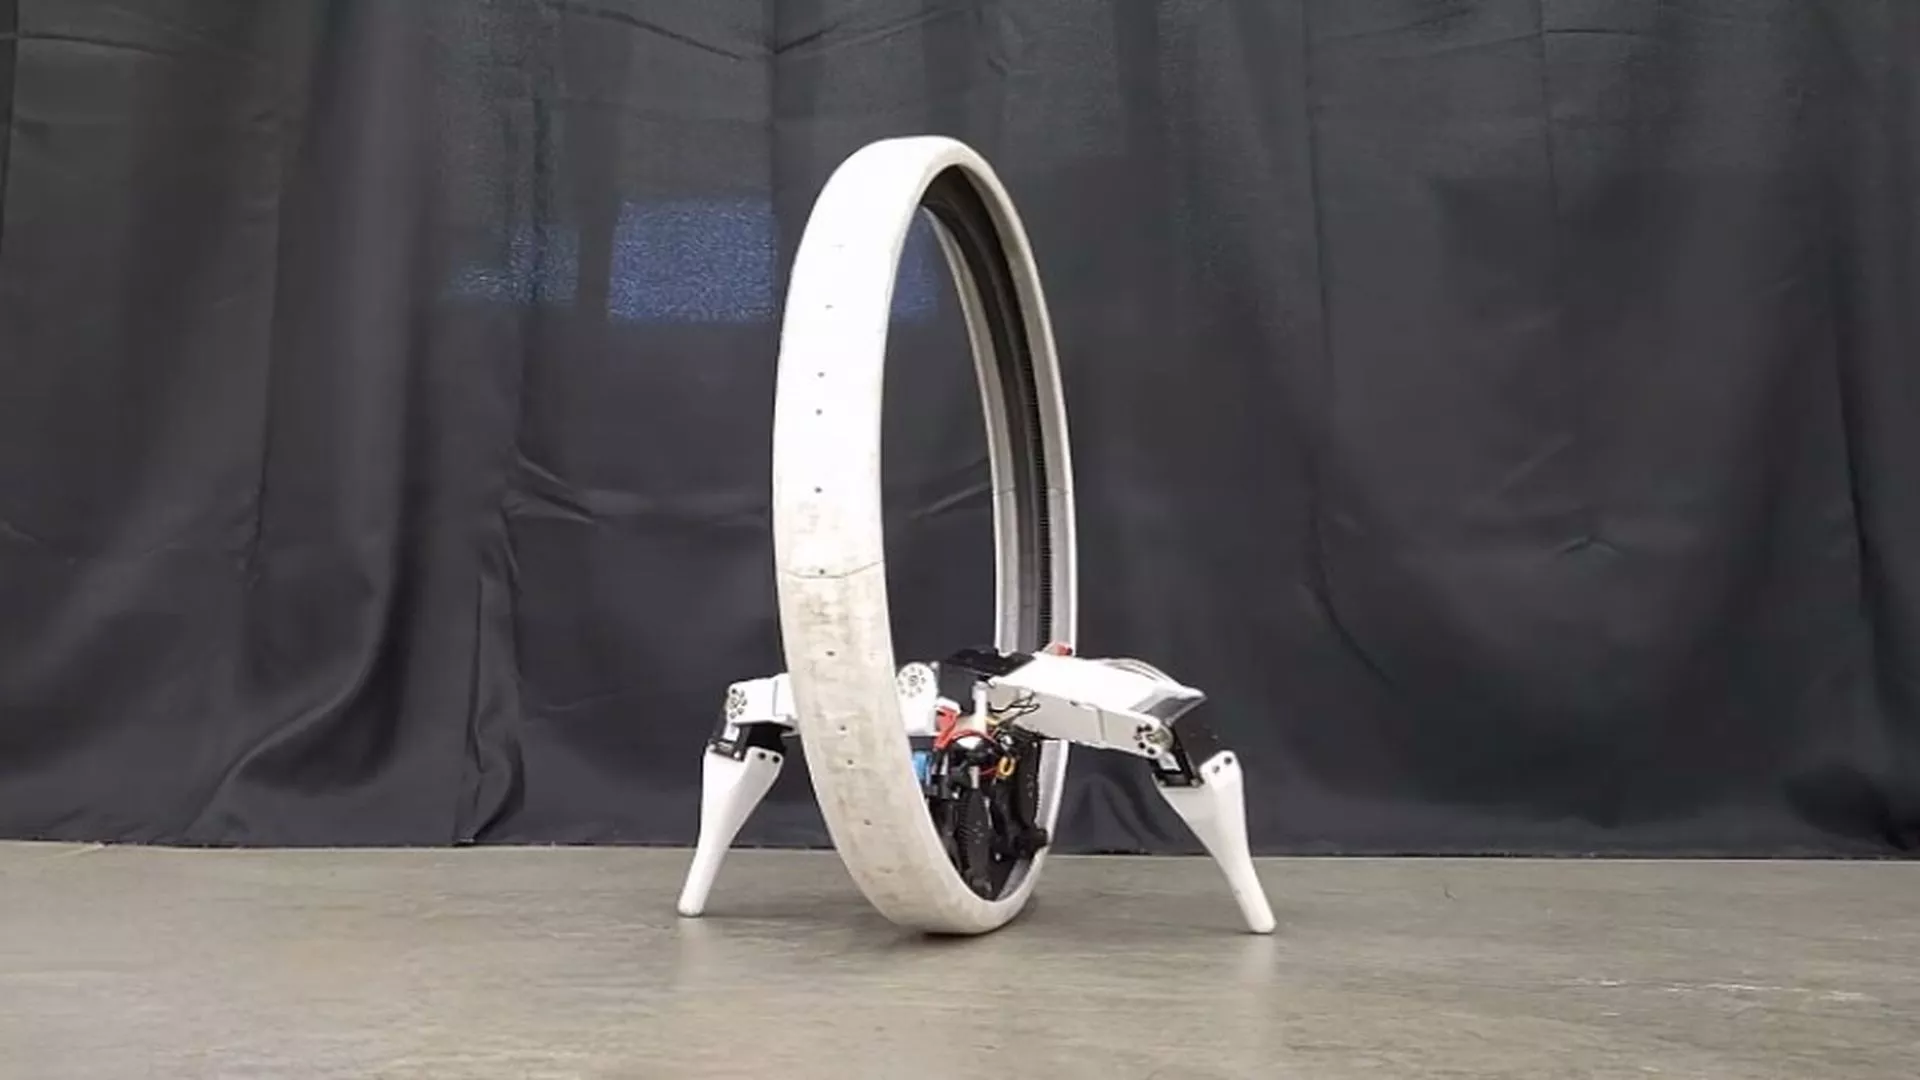 Crean robot monociclo con patas llamado Ringbot